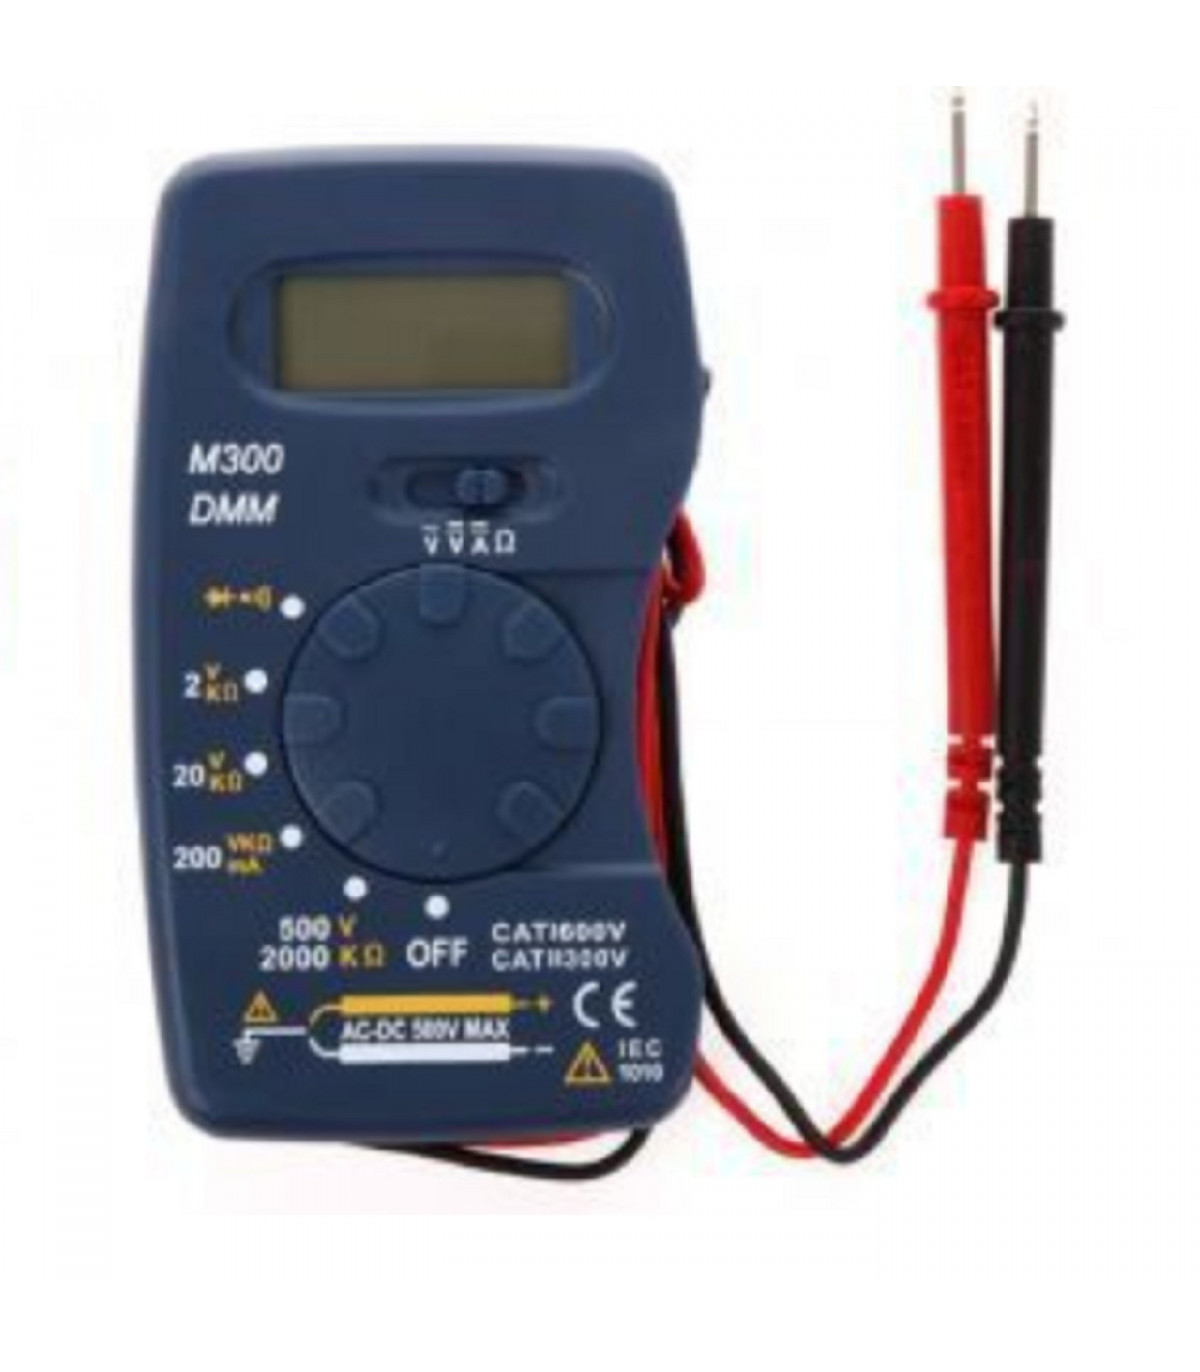 Multimetro eléctrico M300, tester digital, voltímetro, amperímetro,  trabajos de electricidad, conexiones, polímetro, medidor de